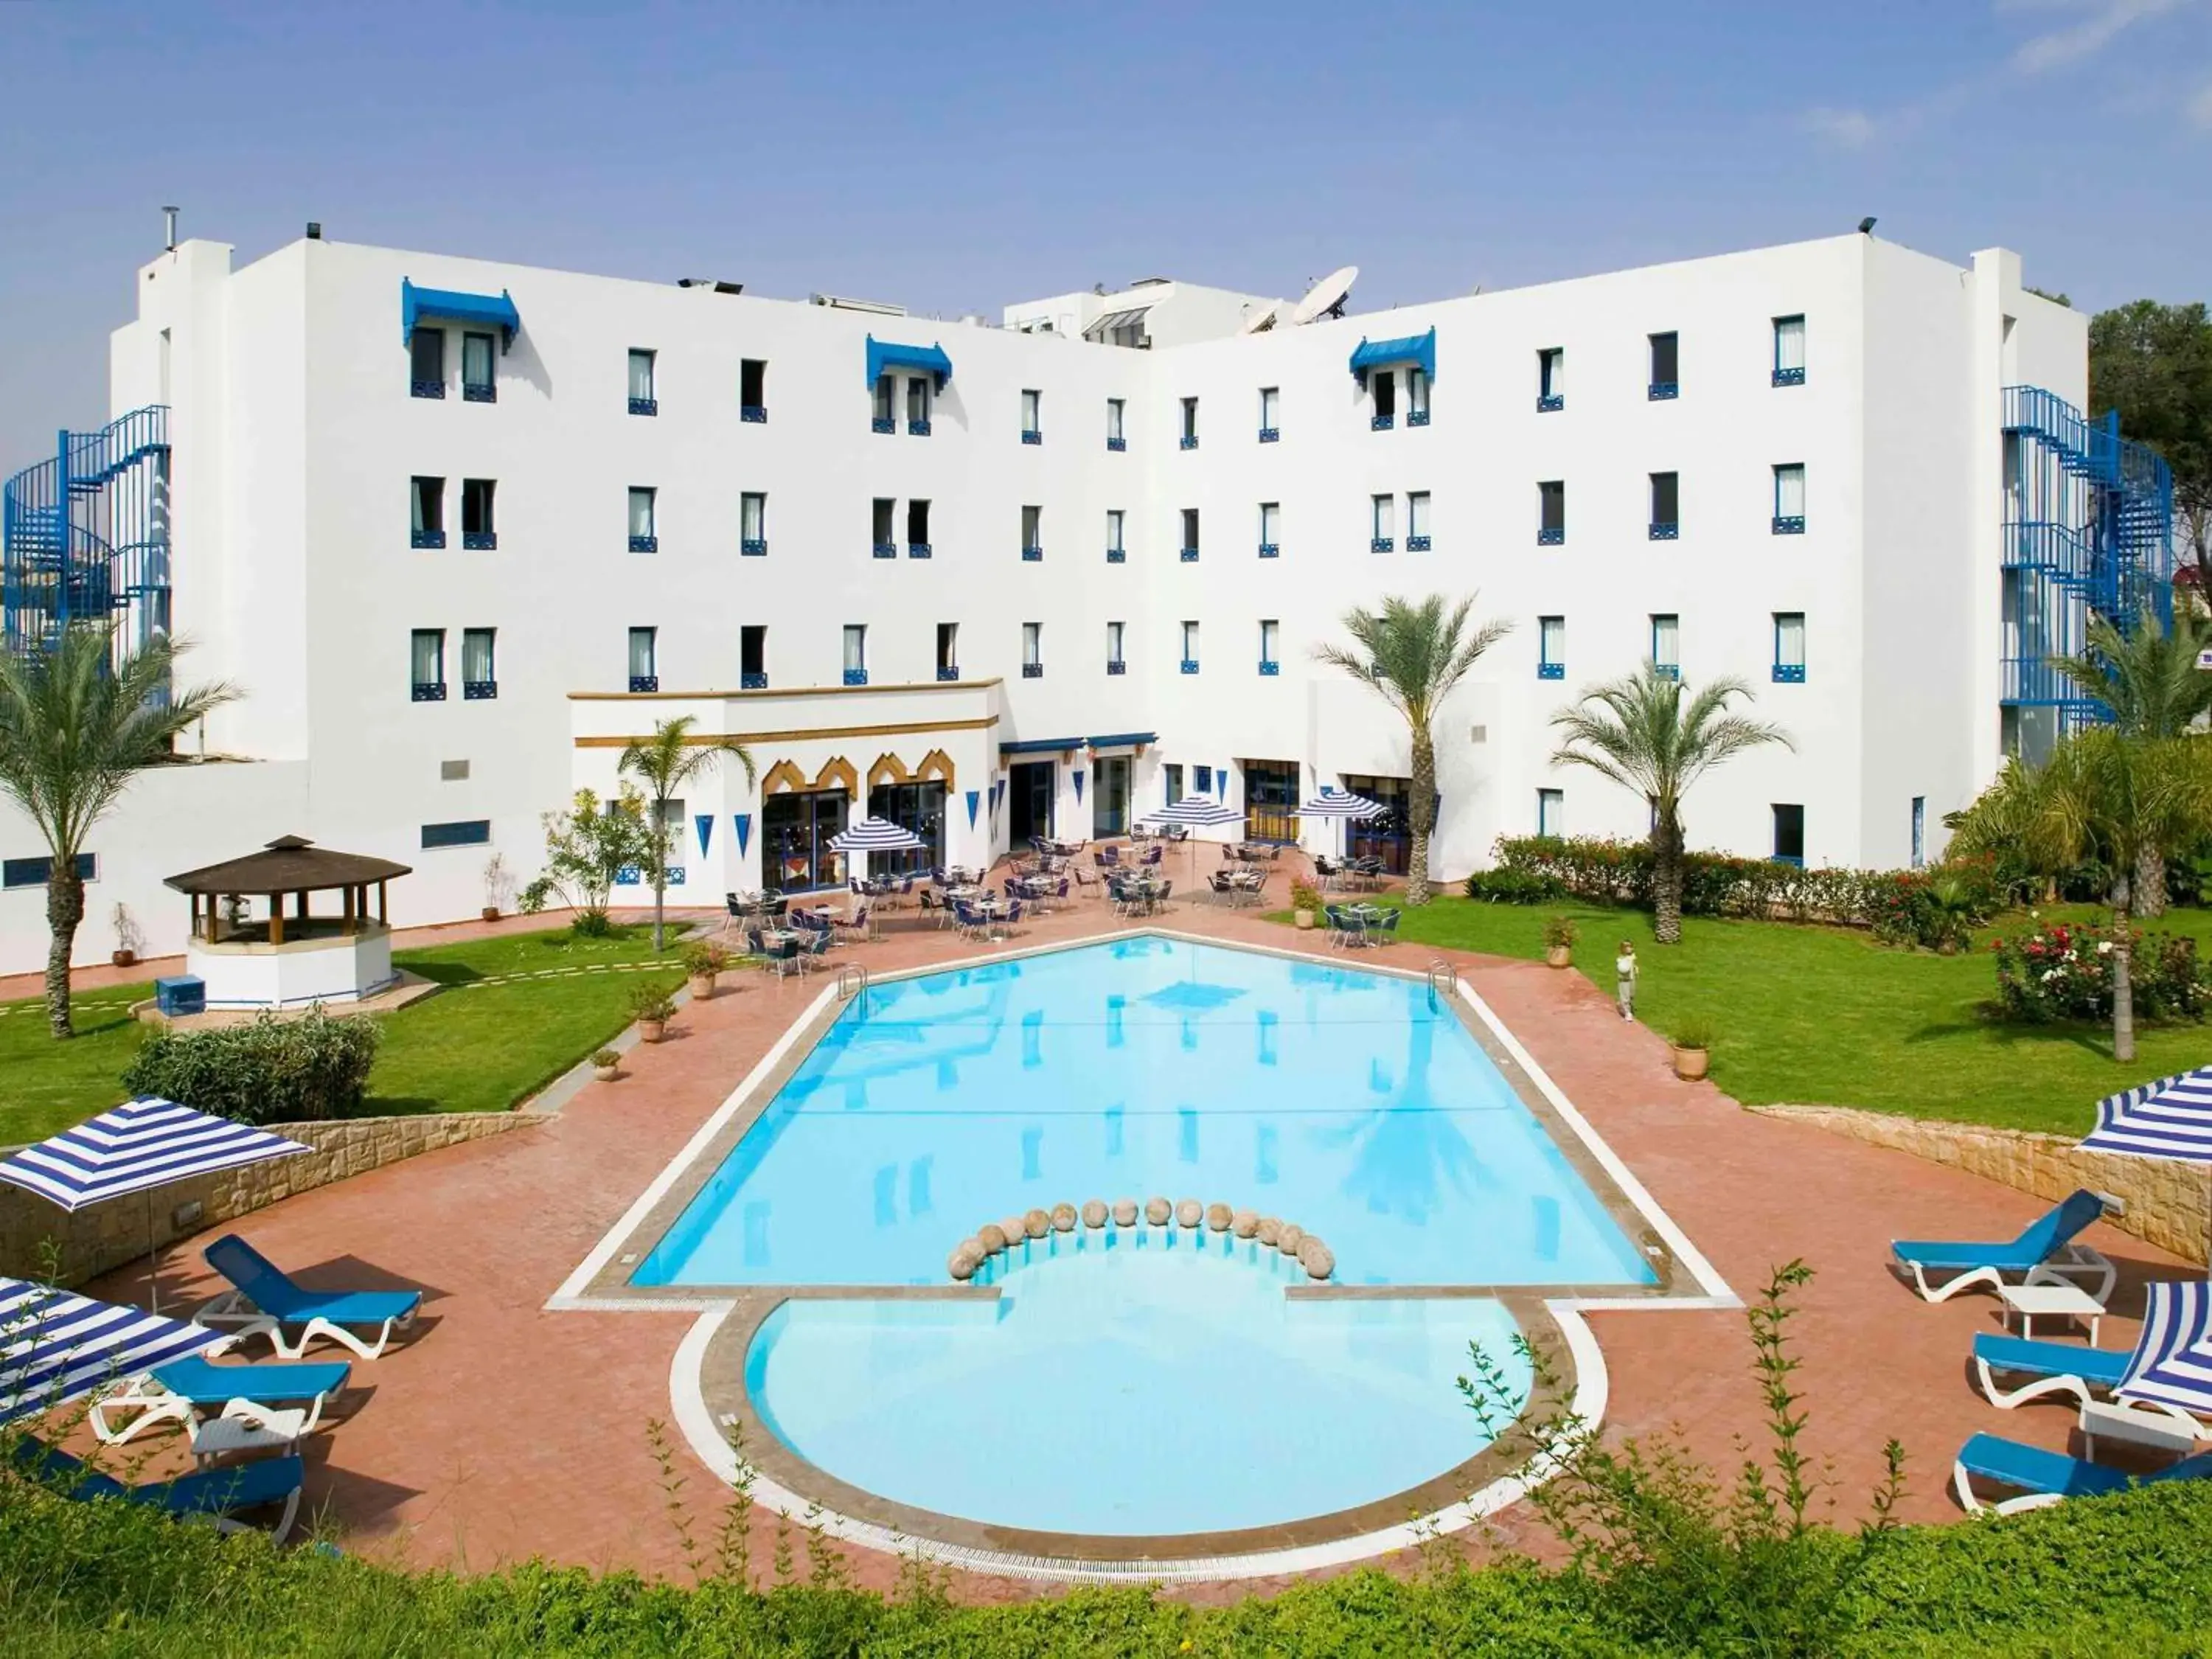 Property building, Pool View in Ibis Meknes Hotel